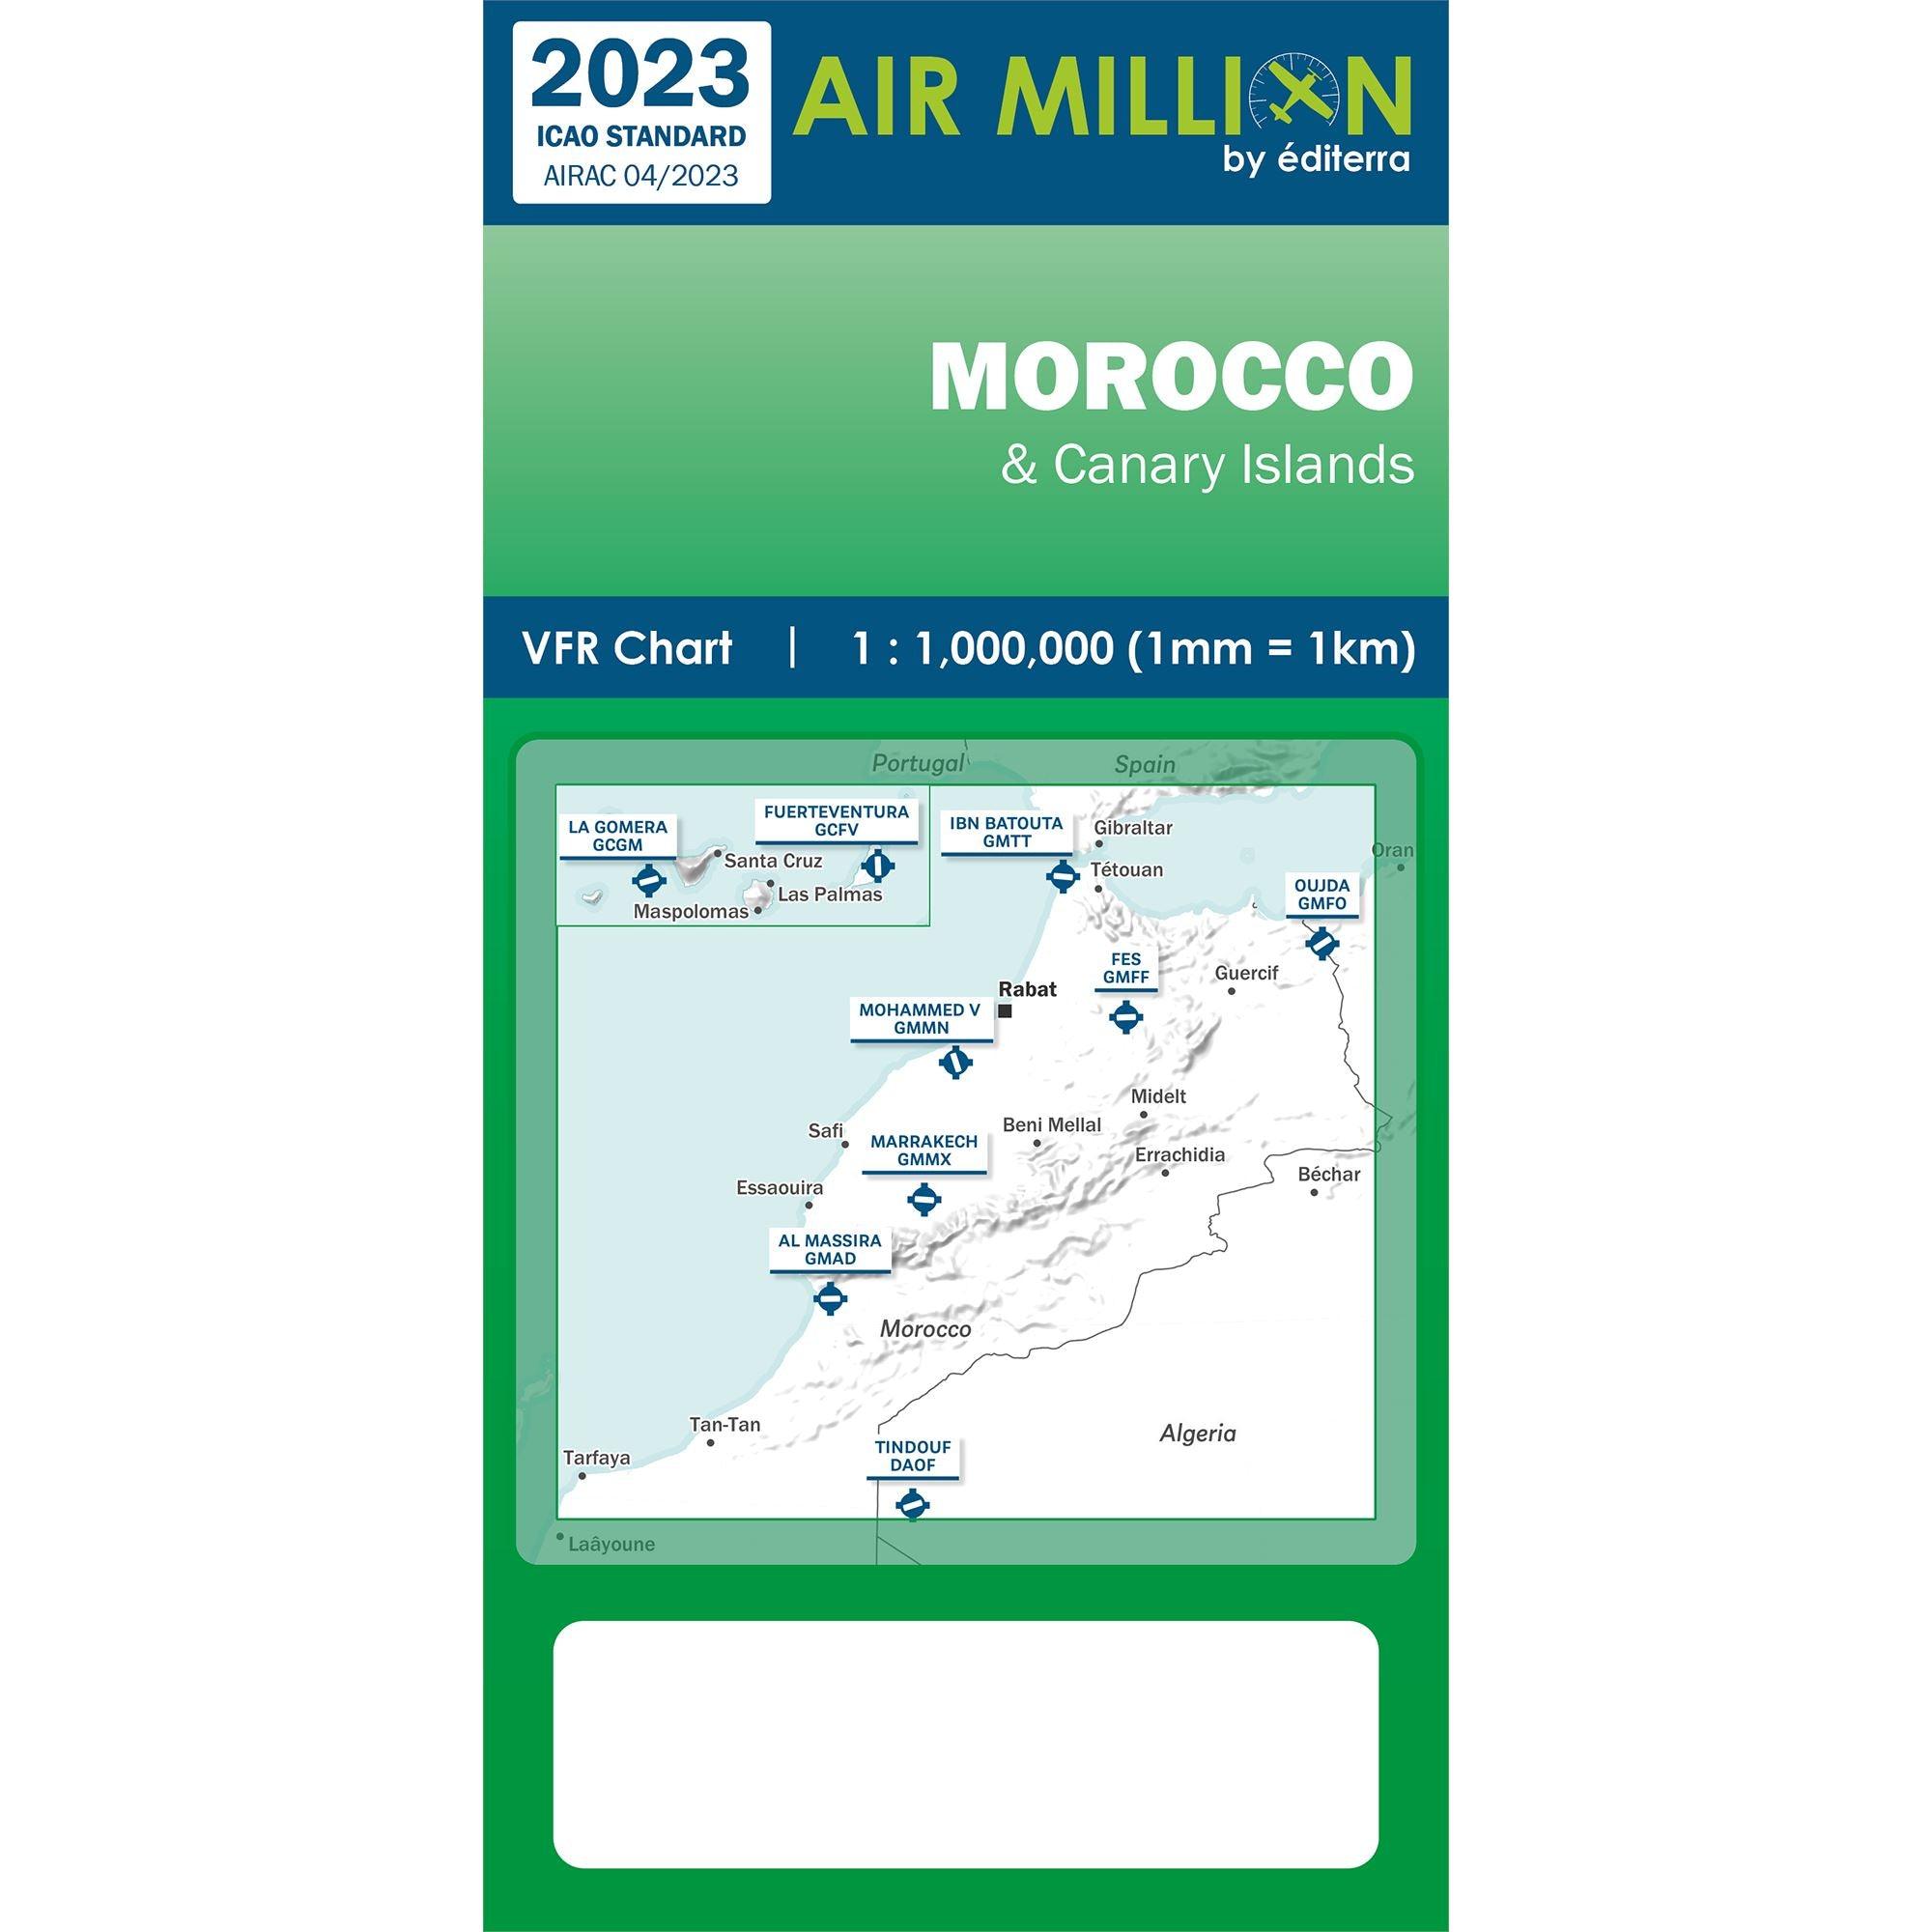 CARTE AIR MILLION MAROC 2023 (1/1 000 000) Cartes Air Million Editerra